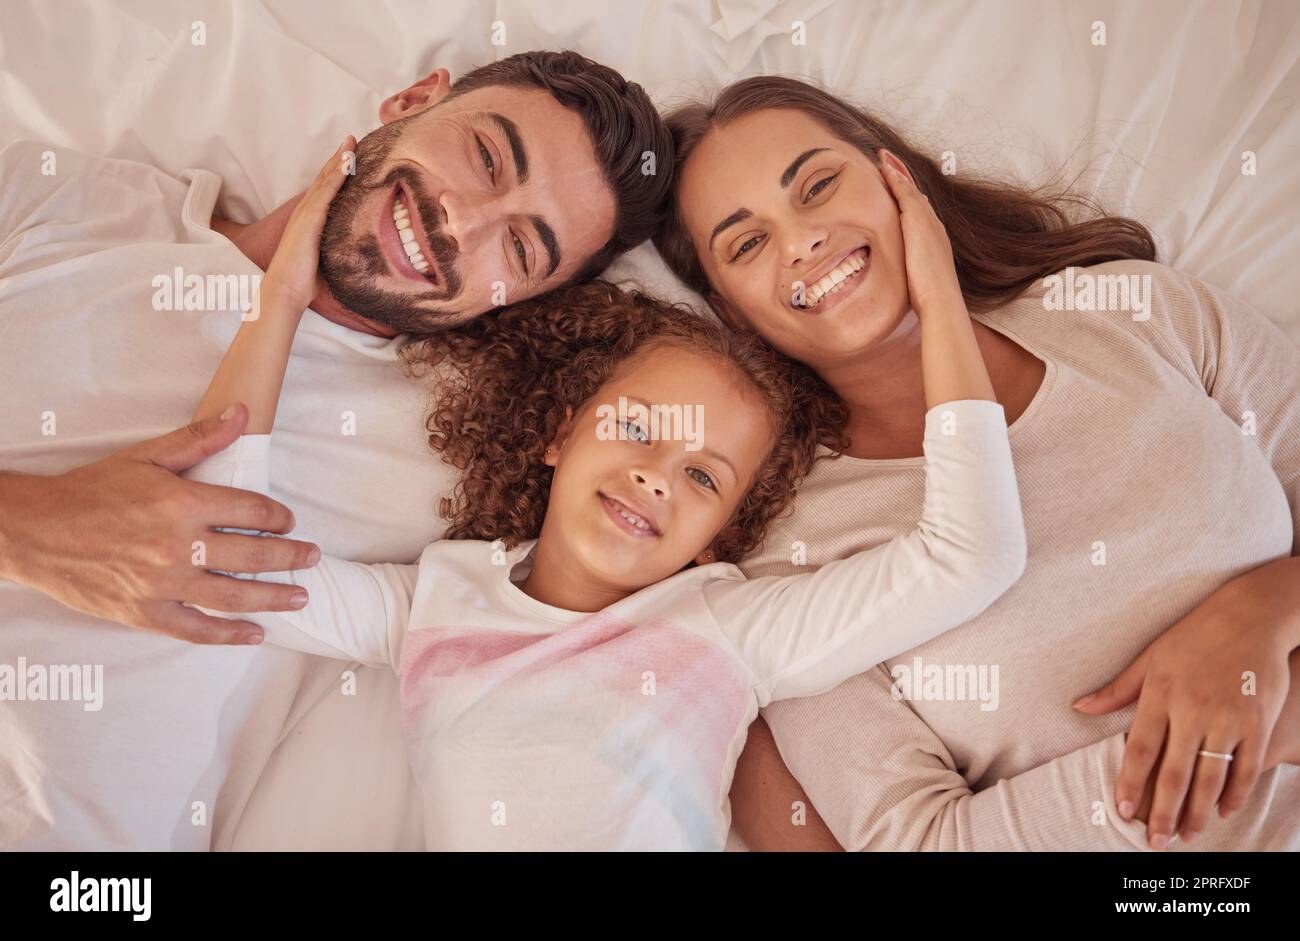 Porträt von glücklichen Eltern und Tochter mit Lächeln im Bett, während Sie sich am Morgen entspannen. Familie oder mutter, Vater und Kind, die im Schlafzimmer liegen, verspielten Spaß haben und sich zu Hause mit dem Glück verbinden Stockfoto